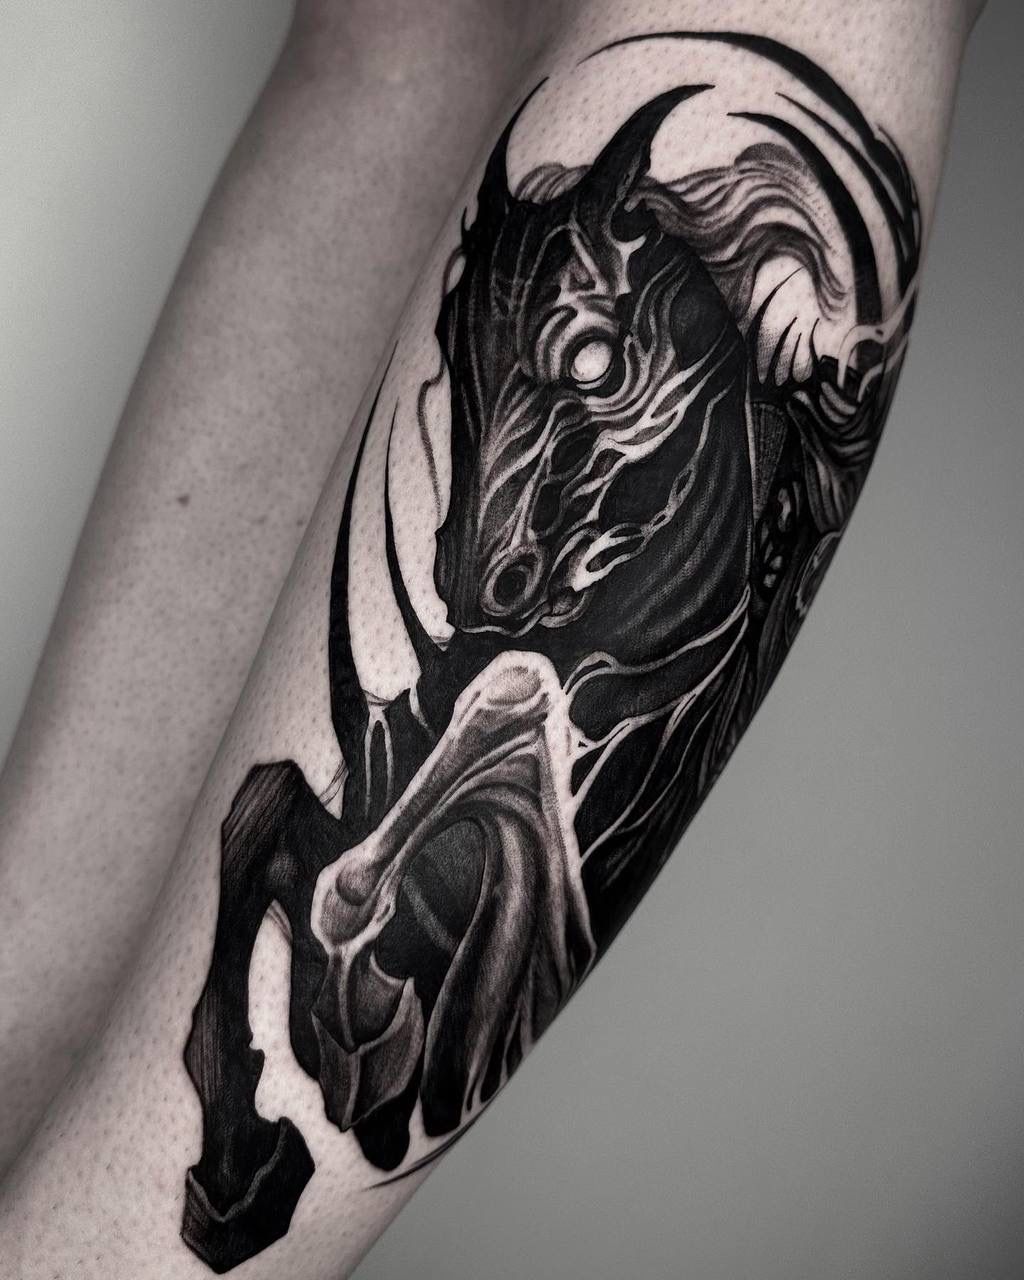 The Horse tattoo by Felipe Kross | Photo 25487